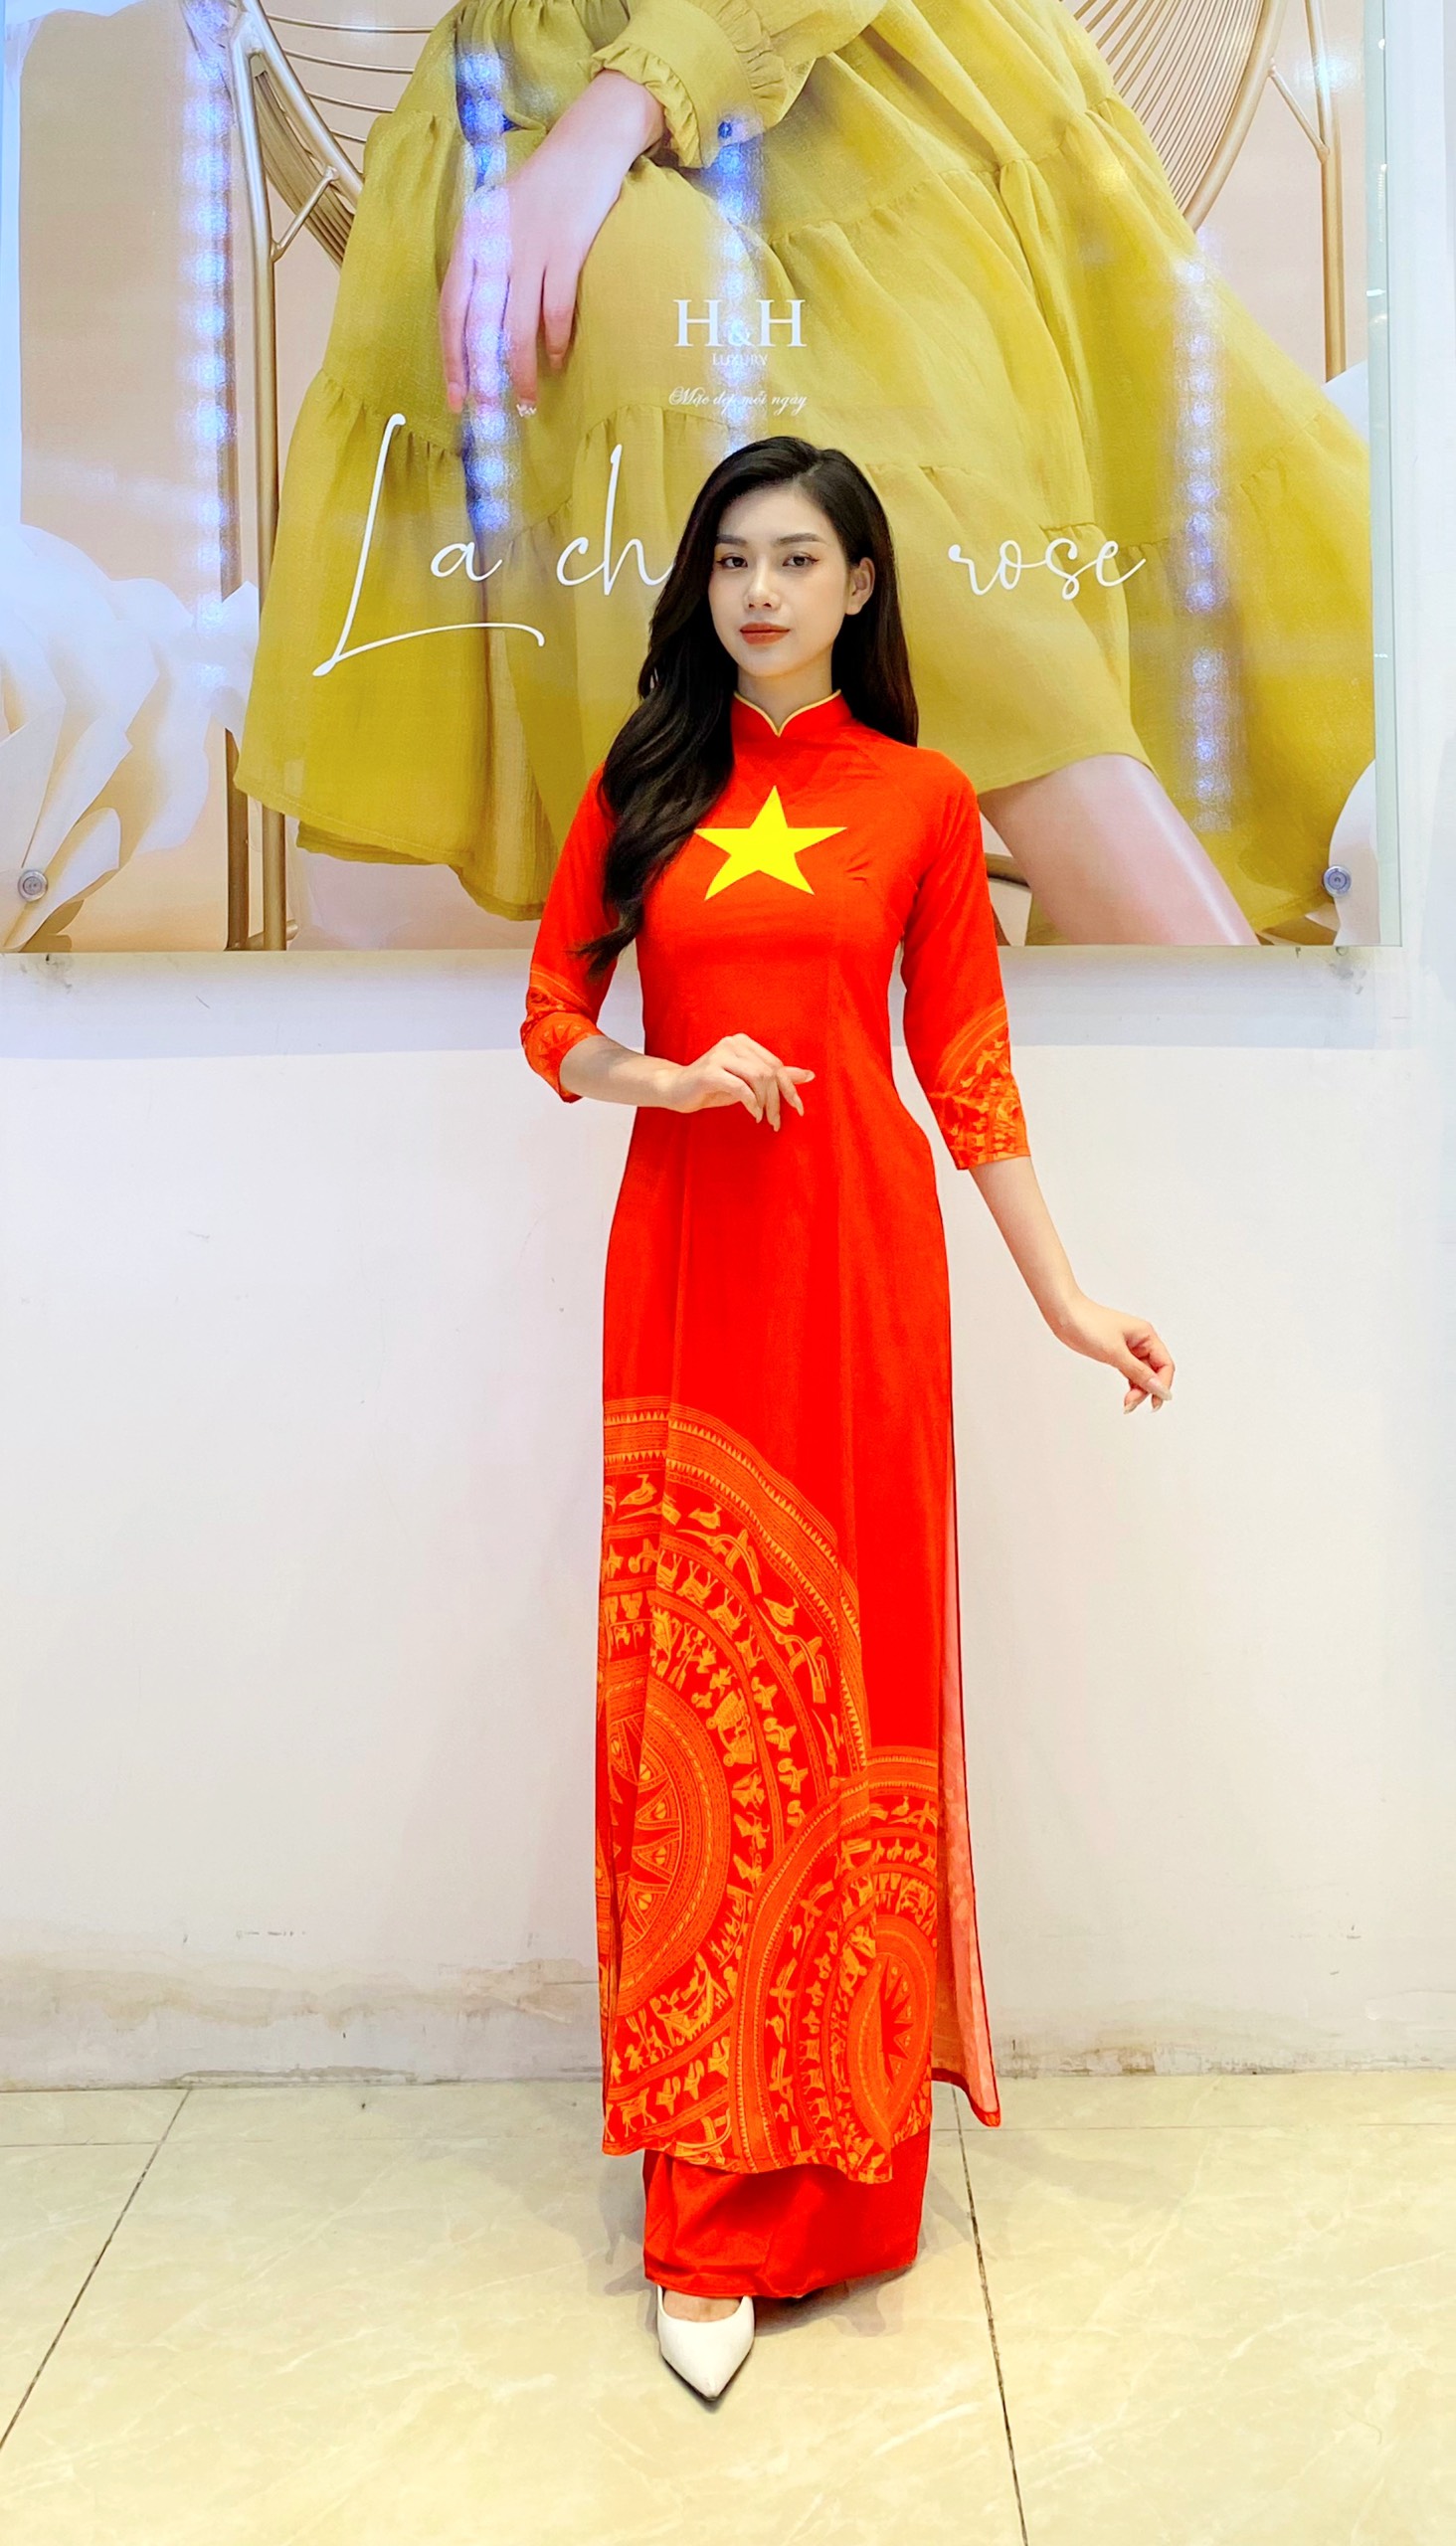 Mặc dù đây là một trang phục truyền thống của Việt Nam, nhưng áo dài cờ đỏ sao vàng vẫn luôn thịnh hành và được mọi người yêu thích. Với kiểu dáng thanh lịch, sang trọng cùng sắc đỏ vàng đặc trưng, chiếc áo dài này sẽ khiến mọi người trông thật trẻ trung và quyến rũ. Hãy xem hình ảnh để cảm nhận sức hút của trang phục này nhé!